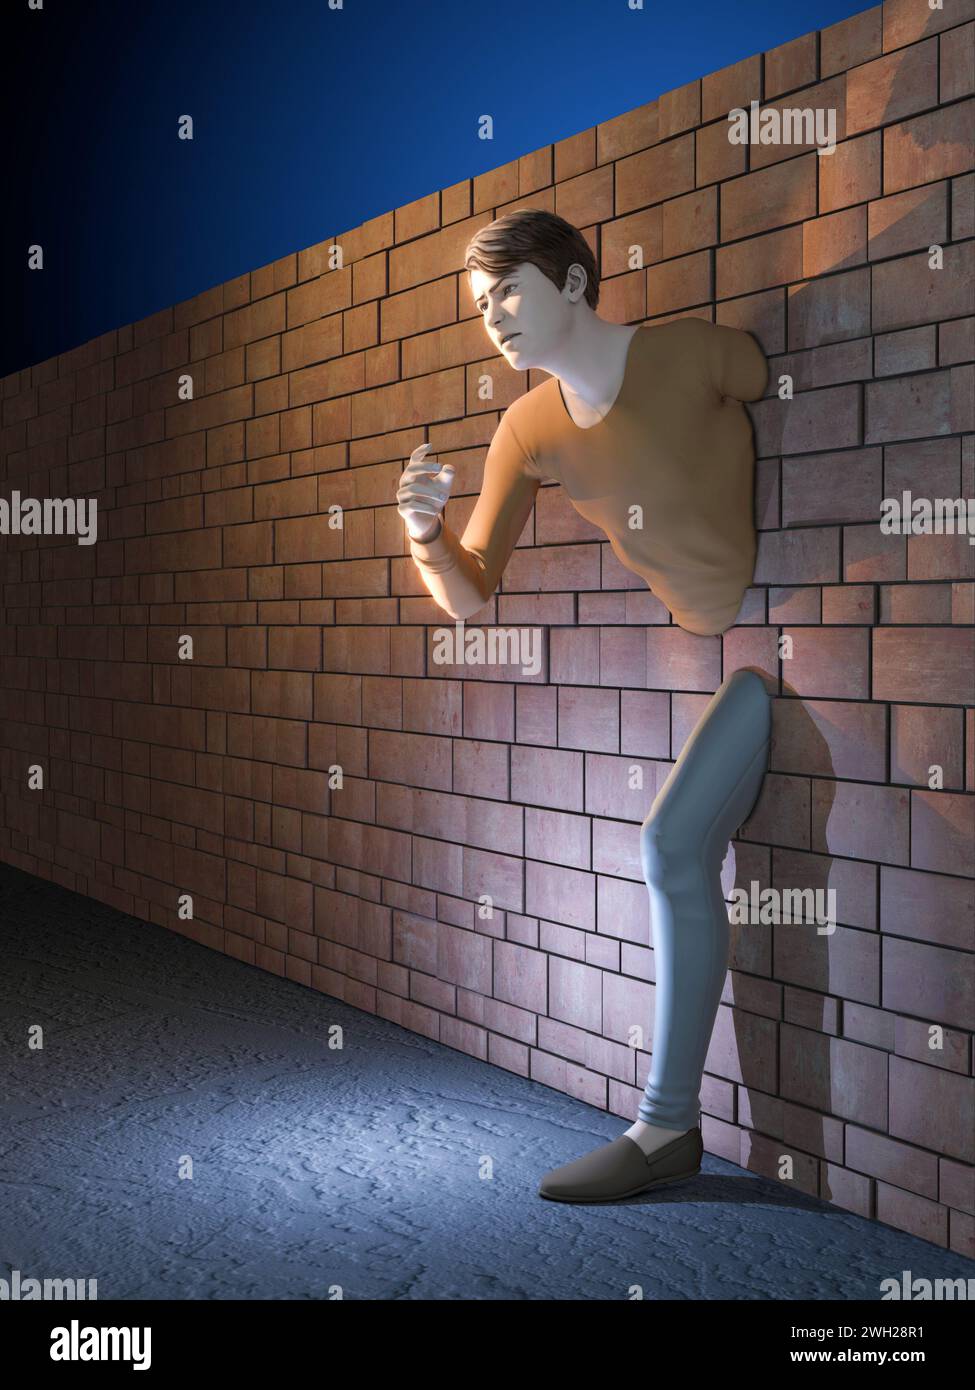 Mann, der eine Mauer überquert. Digitale Illustration, 3D-Rendering. Stockfoto